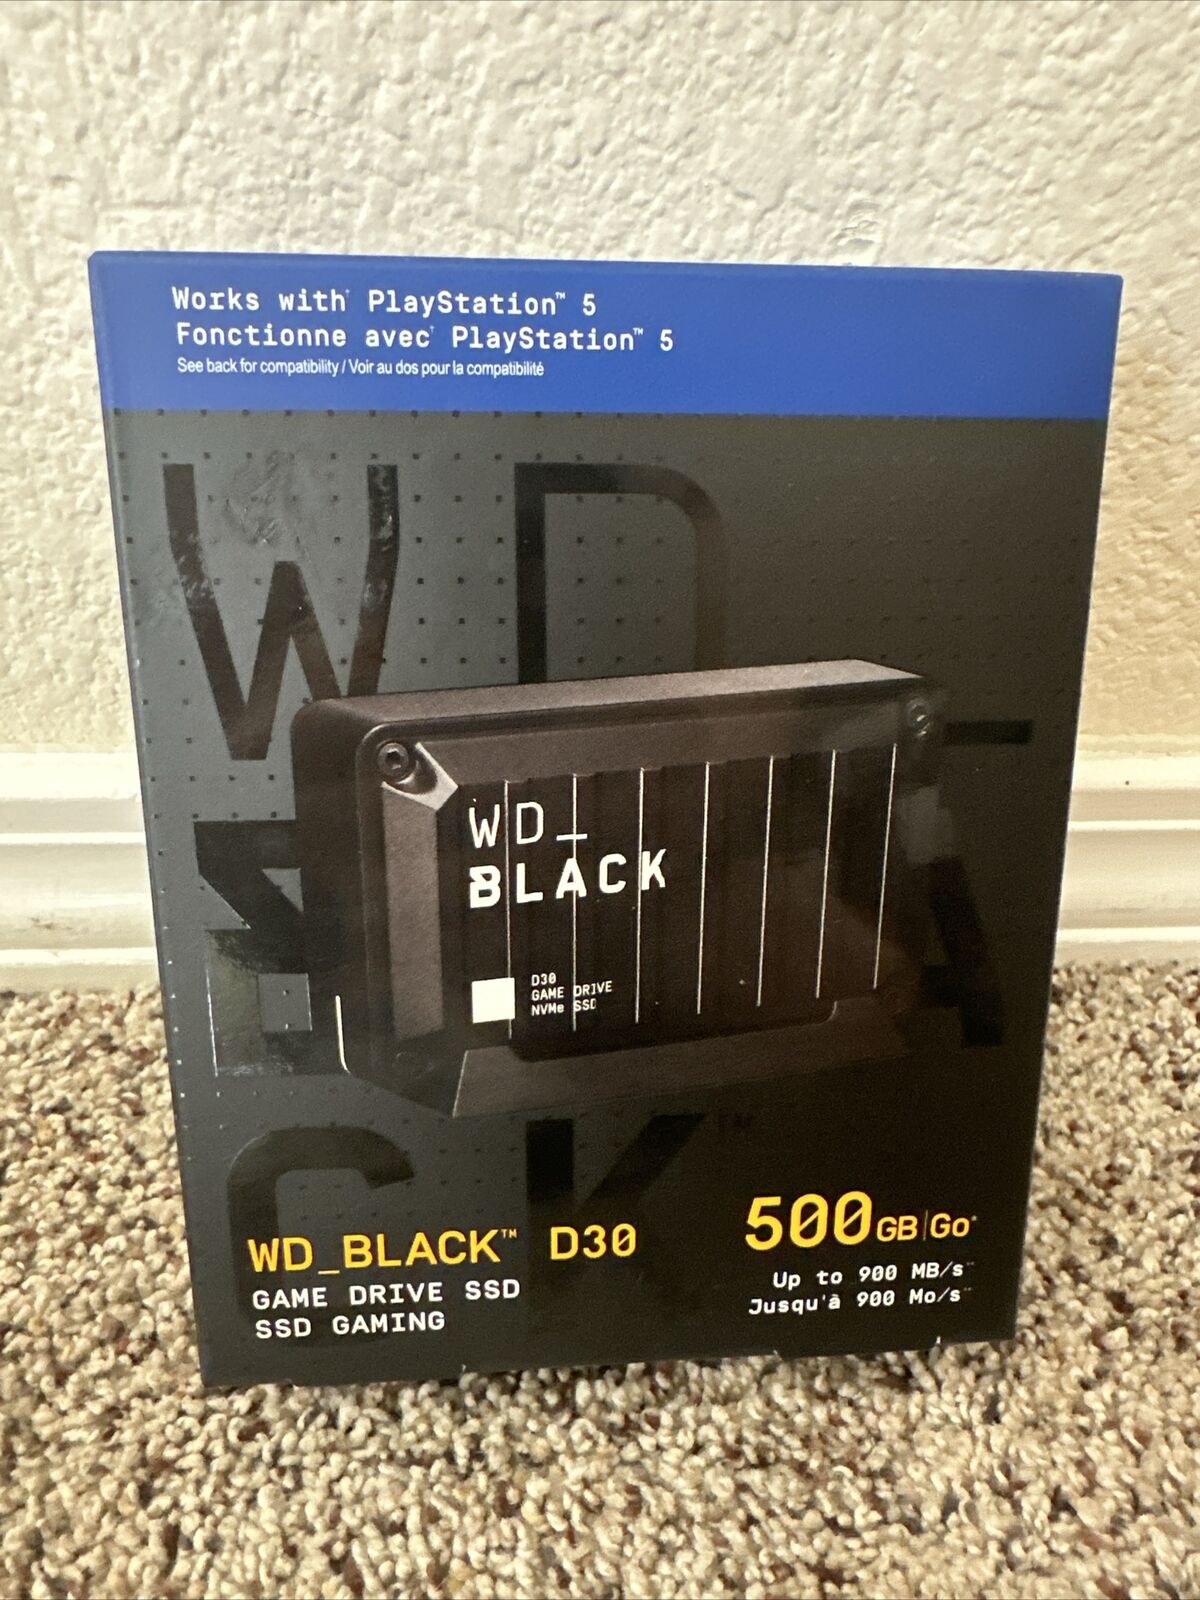 WD BLACK D30 500GB SSD, USB-C, External Solid State Drive - Black...